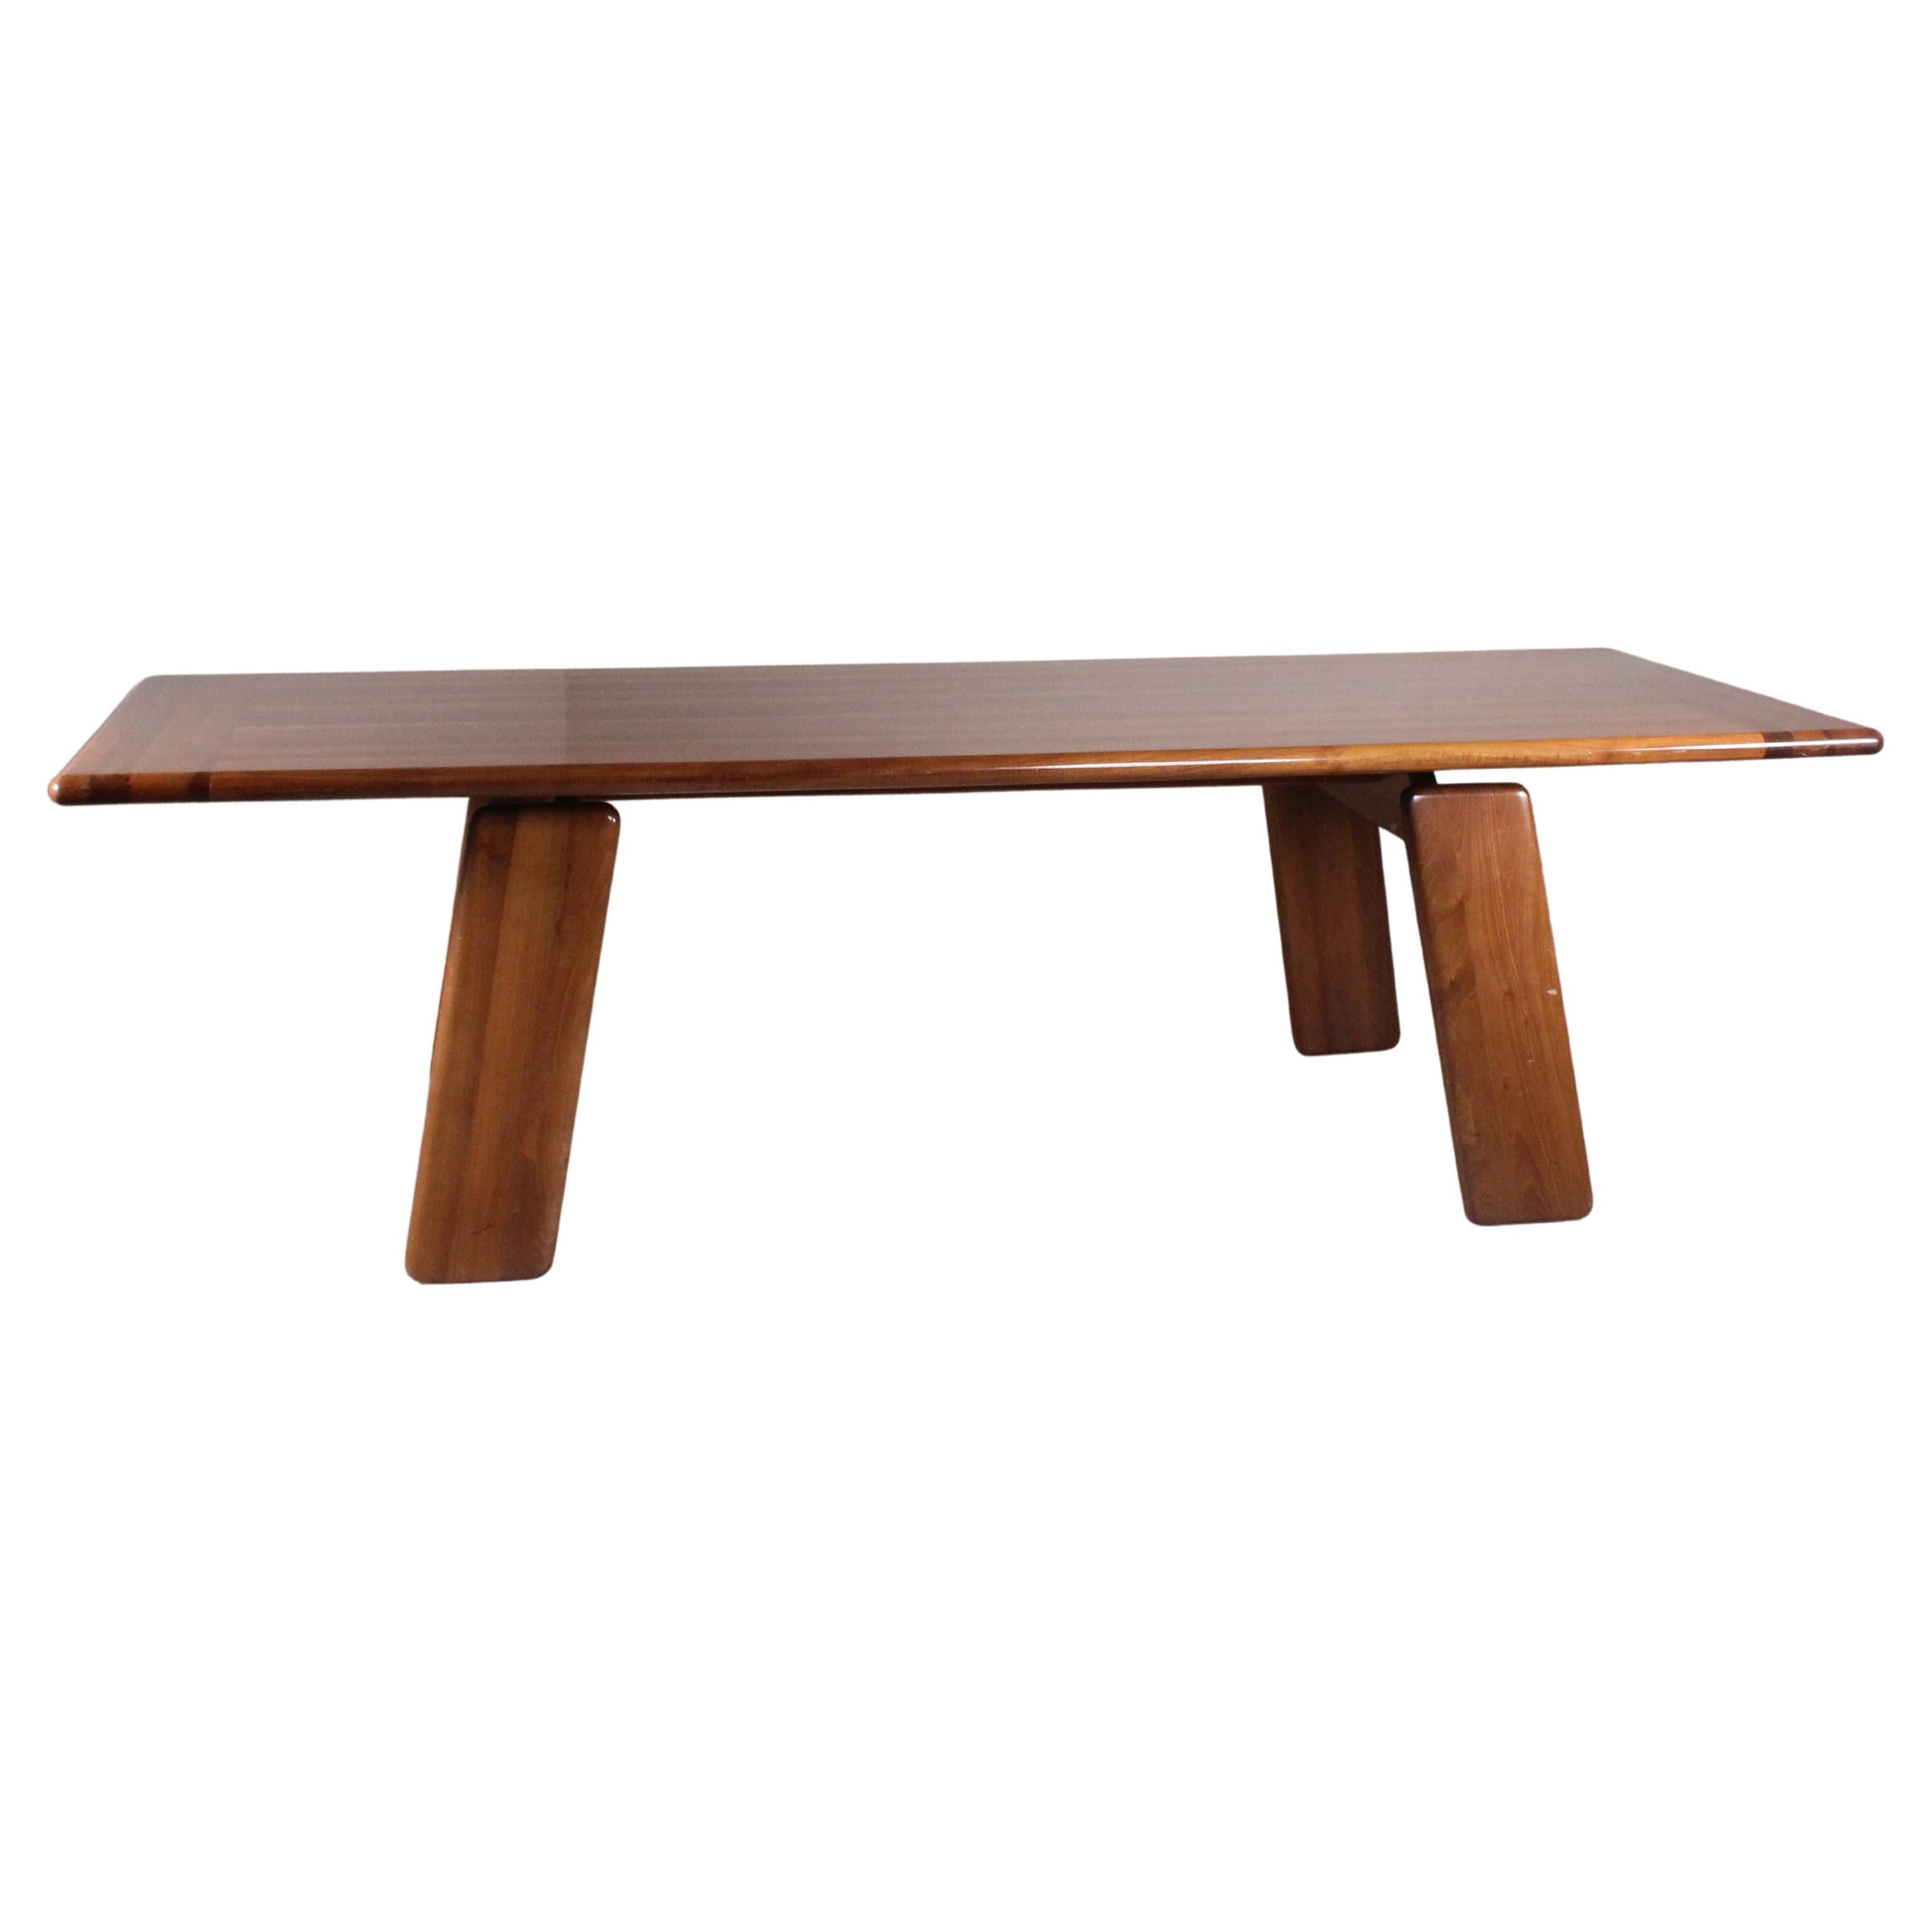  Tavolo di legno, Mario Marenco, MobilGirgi, 1960